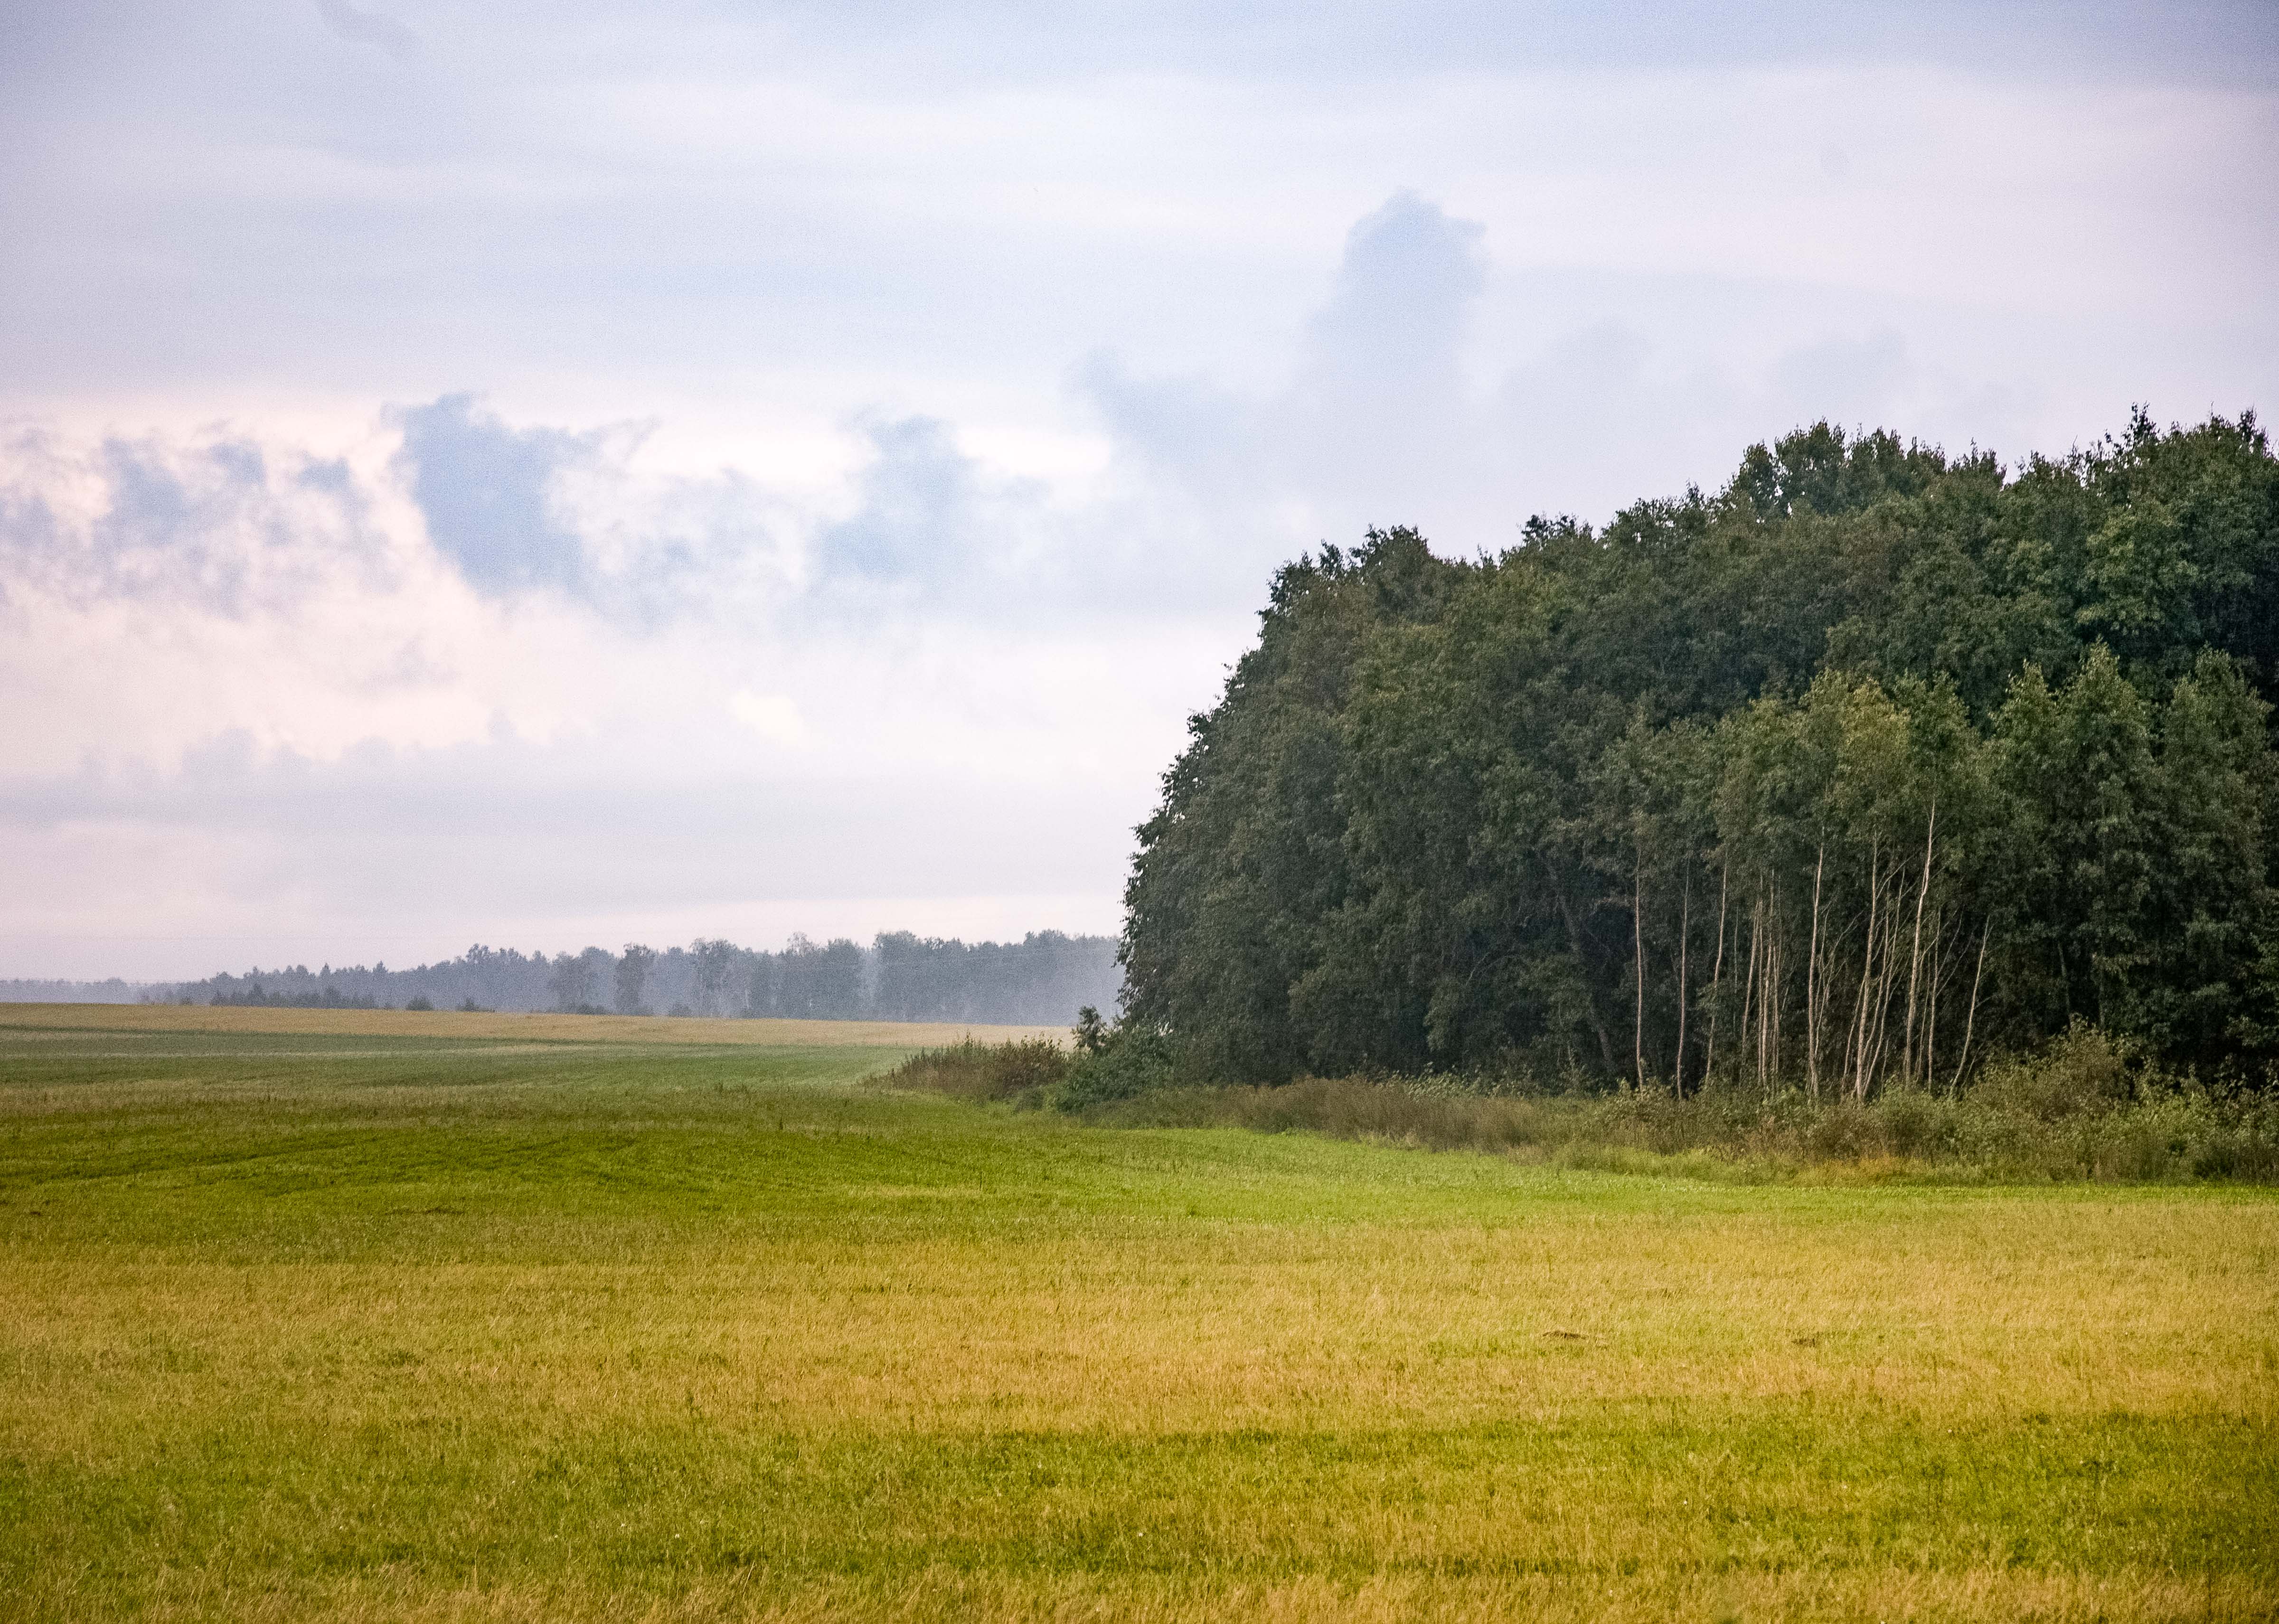 Estonia, Jarvamaa Prov, Landscape, 2010, IMG_1317